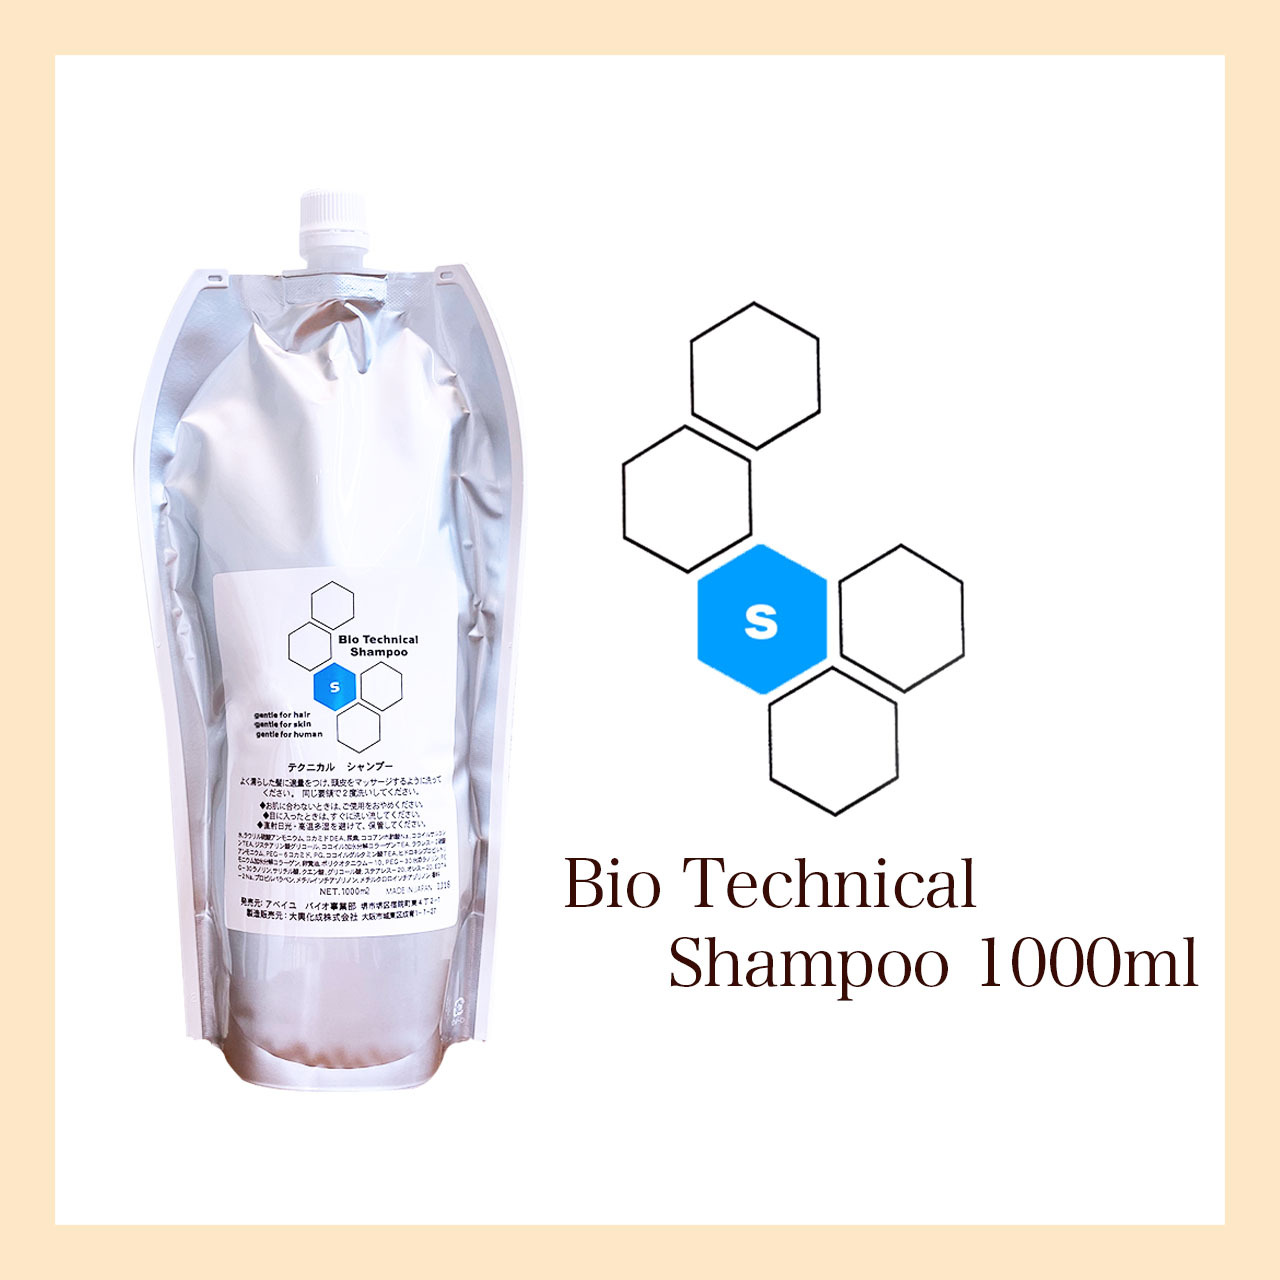 Bio Technical Shampoo テクニカル シャンプー Net 1000ml E N V O L E E